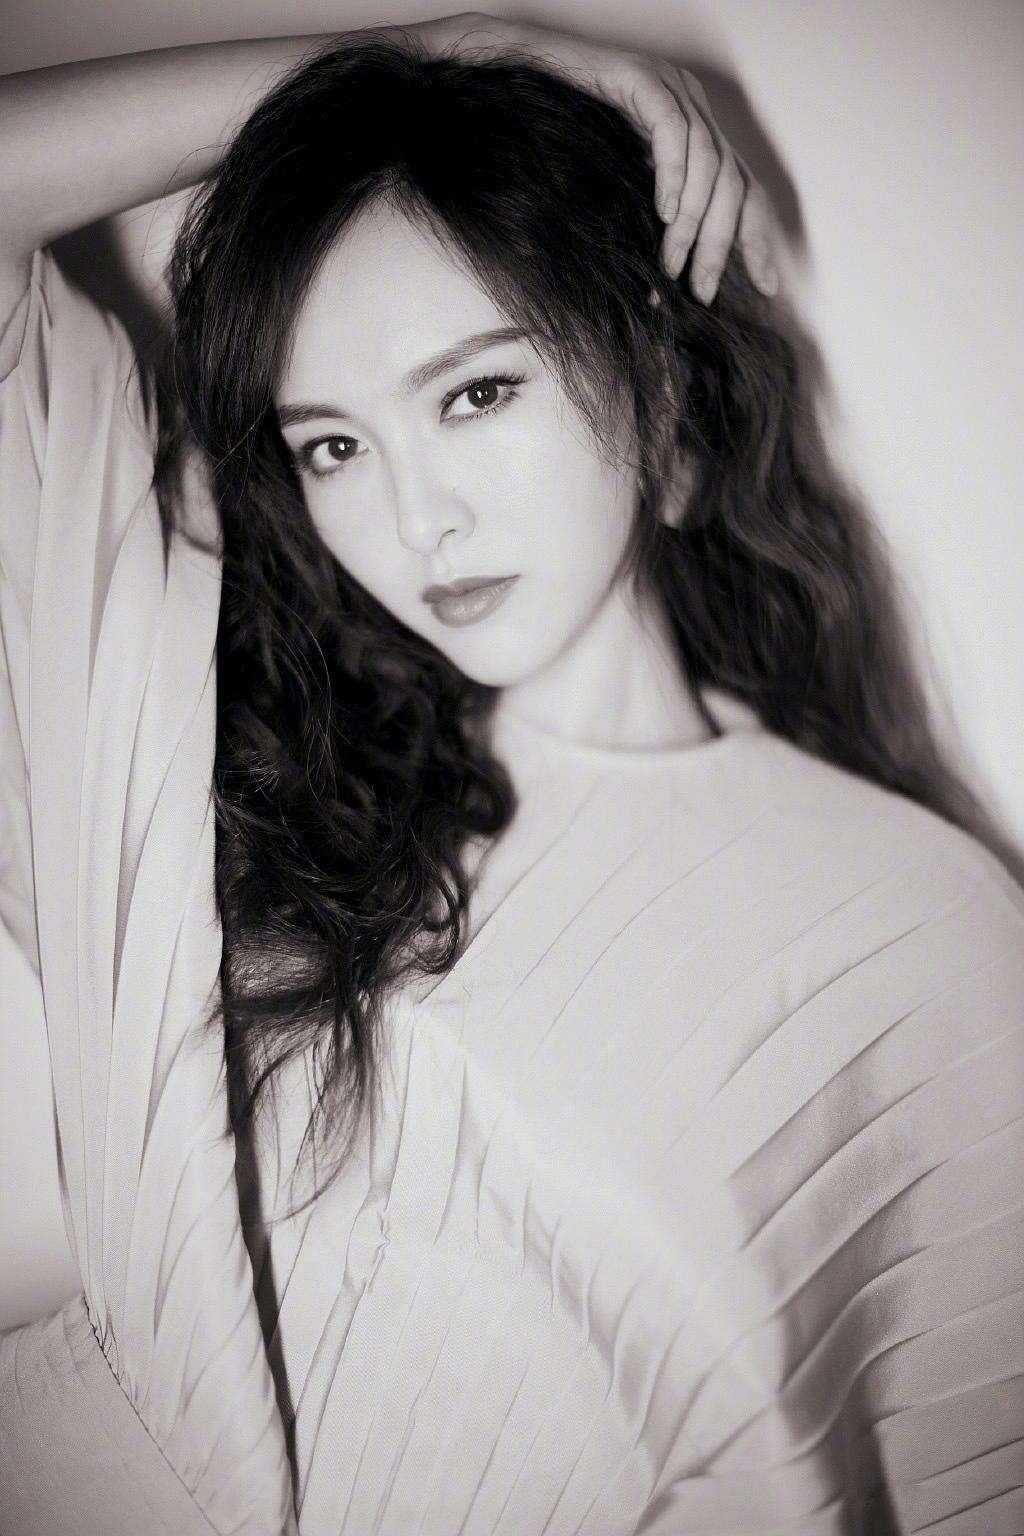 唐嫣,中国大陆人气女演员兼歌手,毕业于中央戏剧学院表演系2002级本科